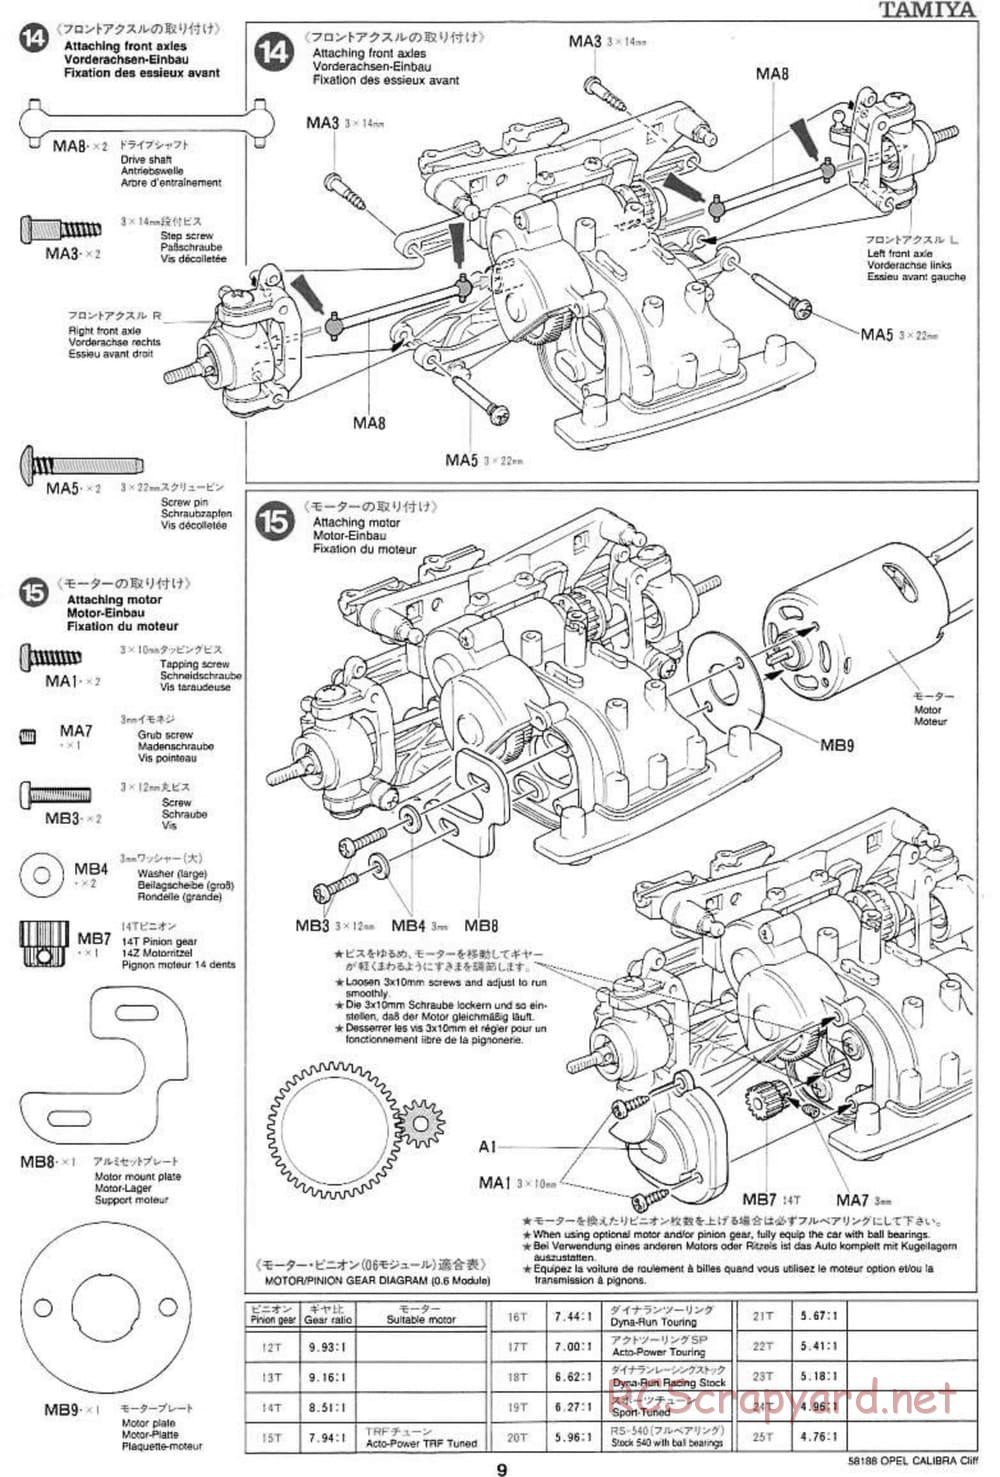 Tamiya - Opel Calibra Cliff - TA-03F Chassis - Manual - Page 9